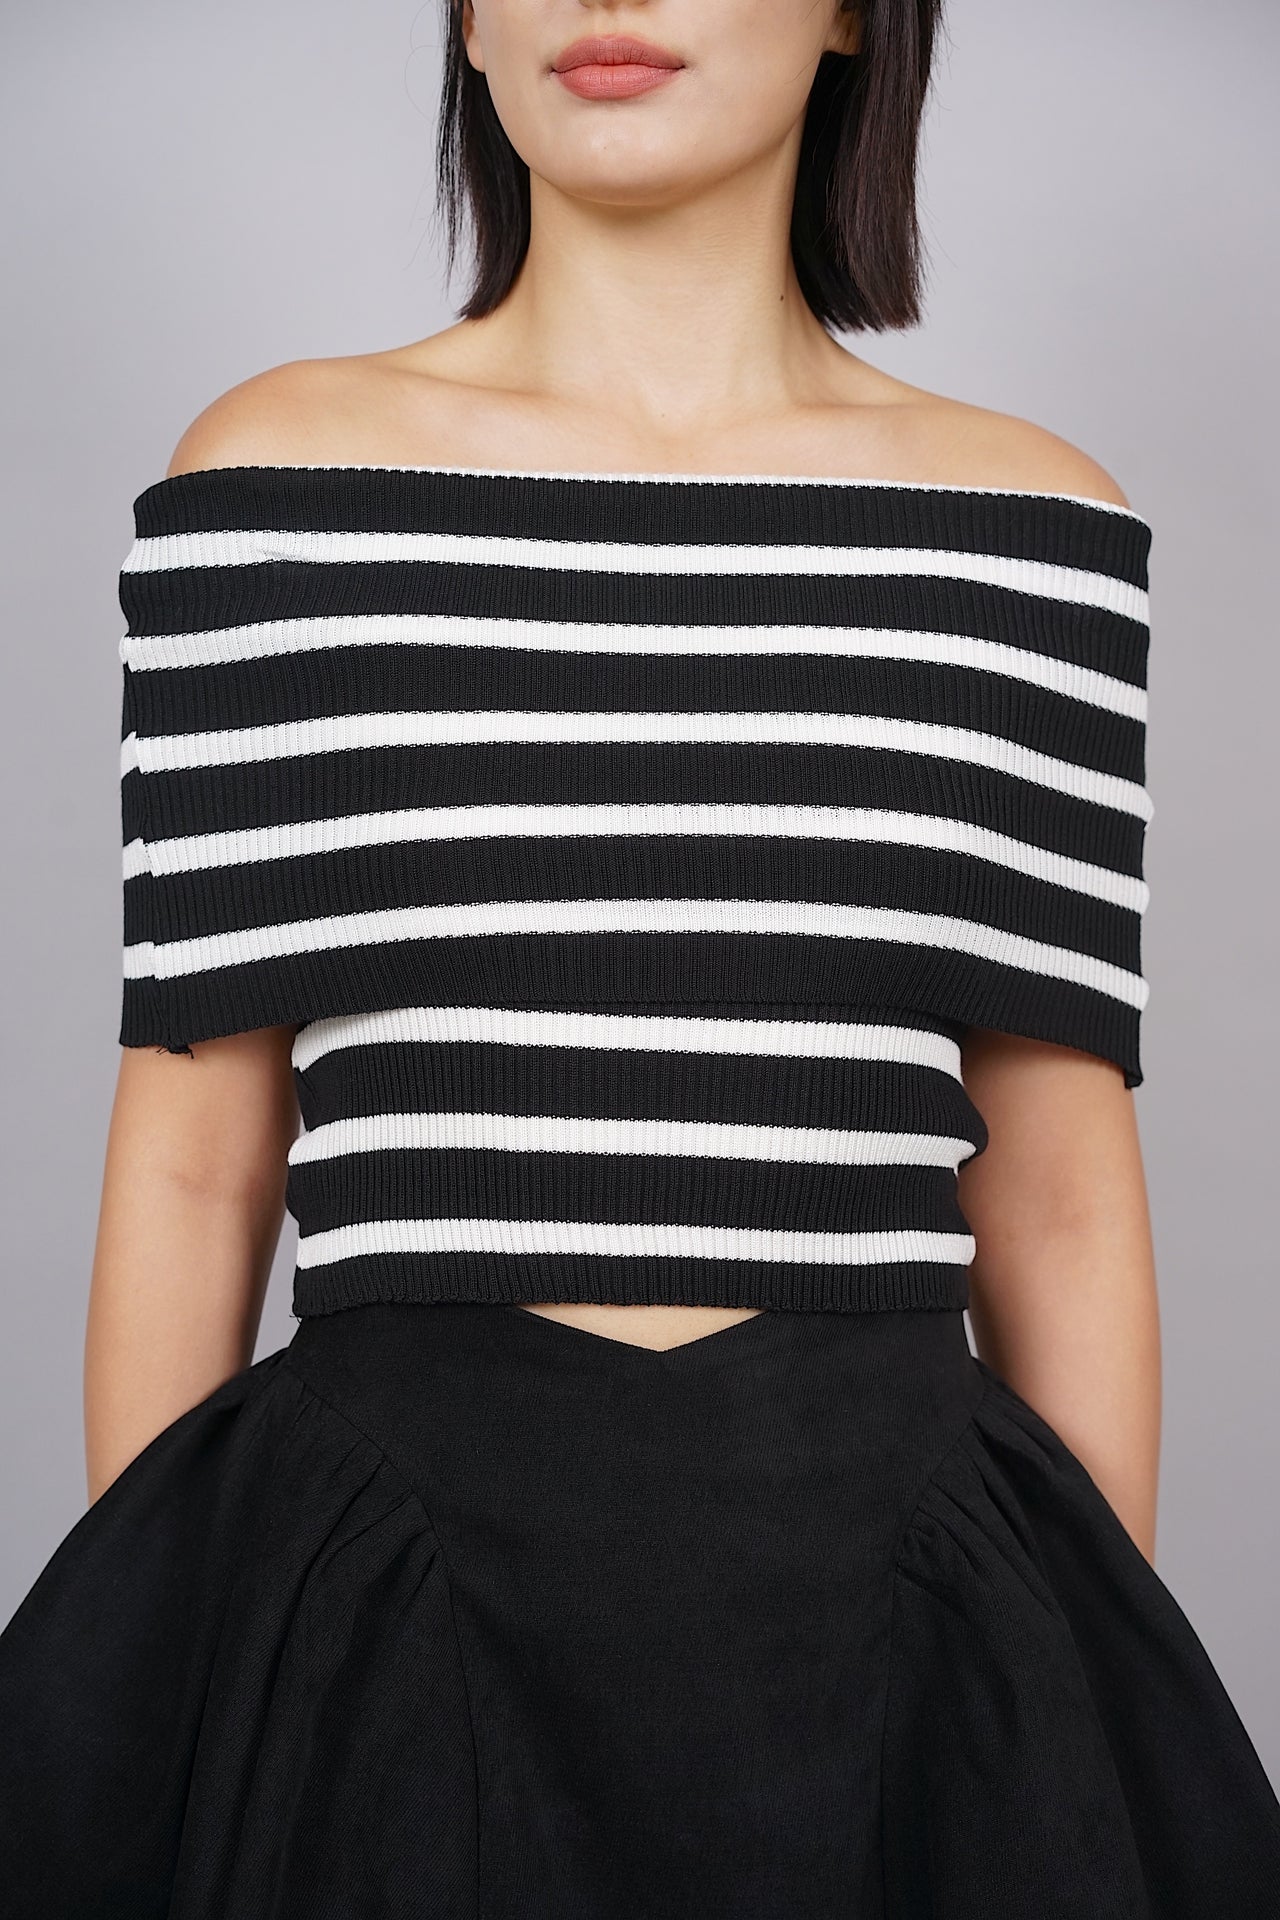 EVERYDAY / Tessa Off-Shoulder Top in Black Stripes